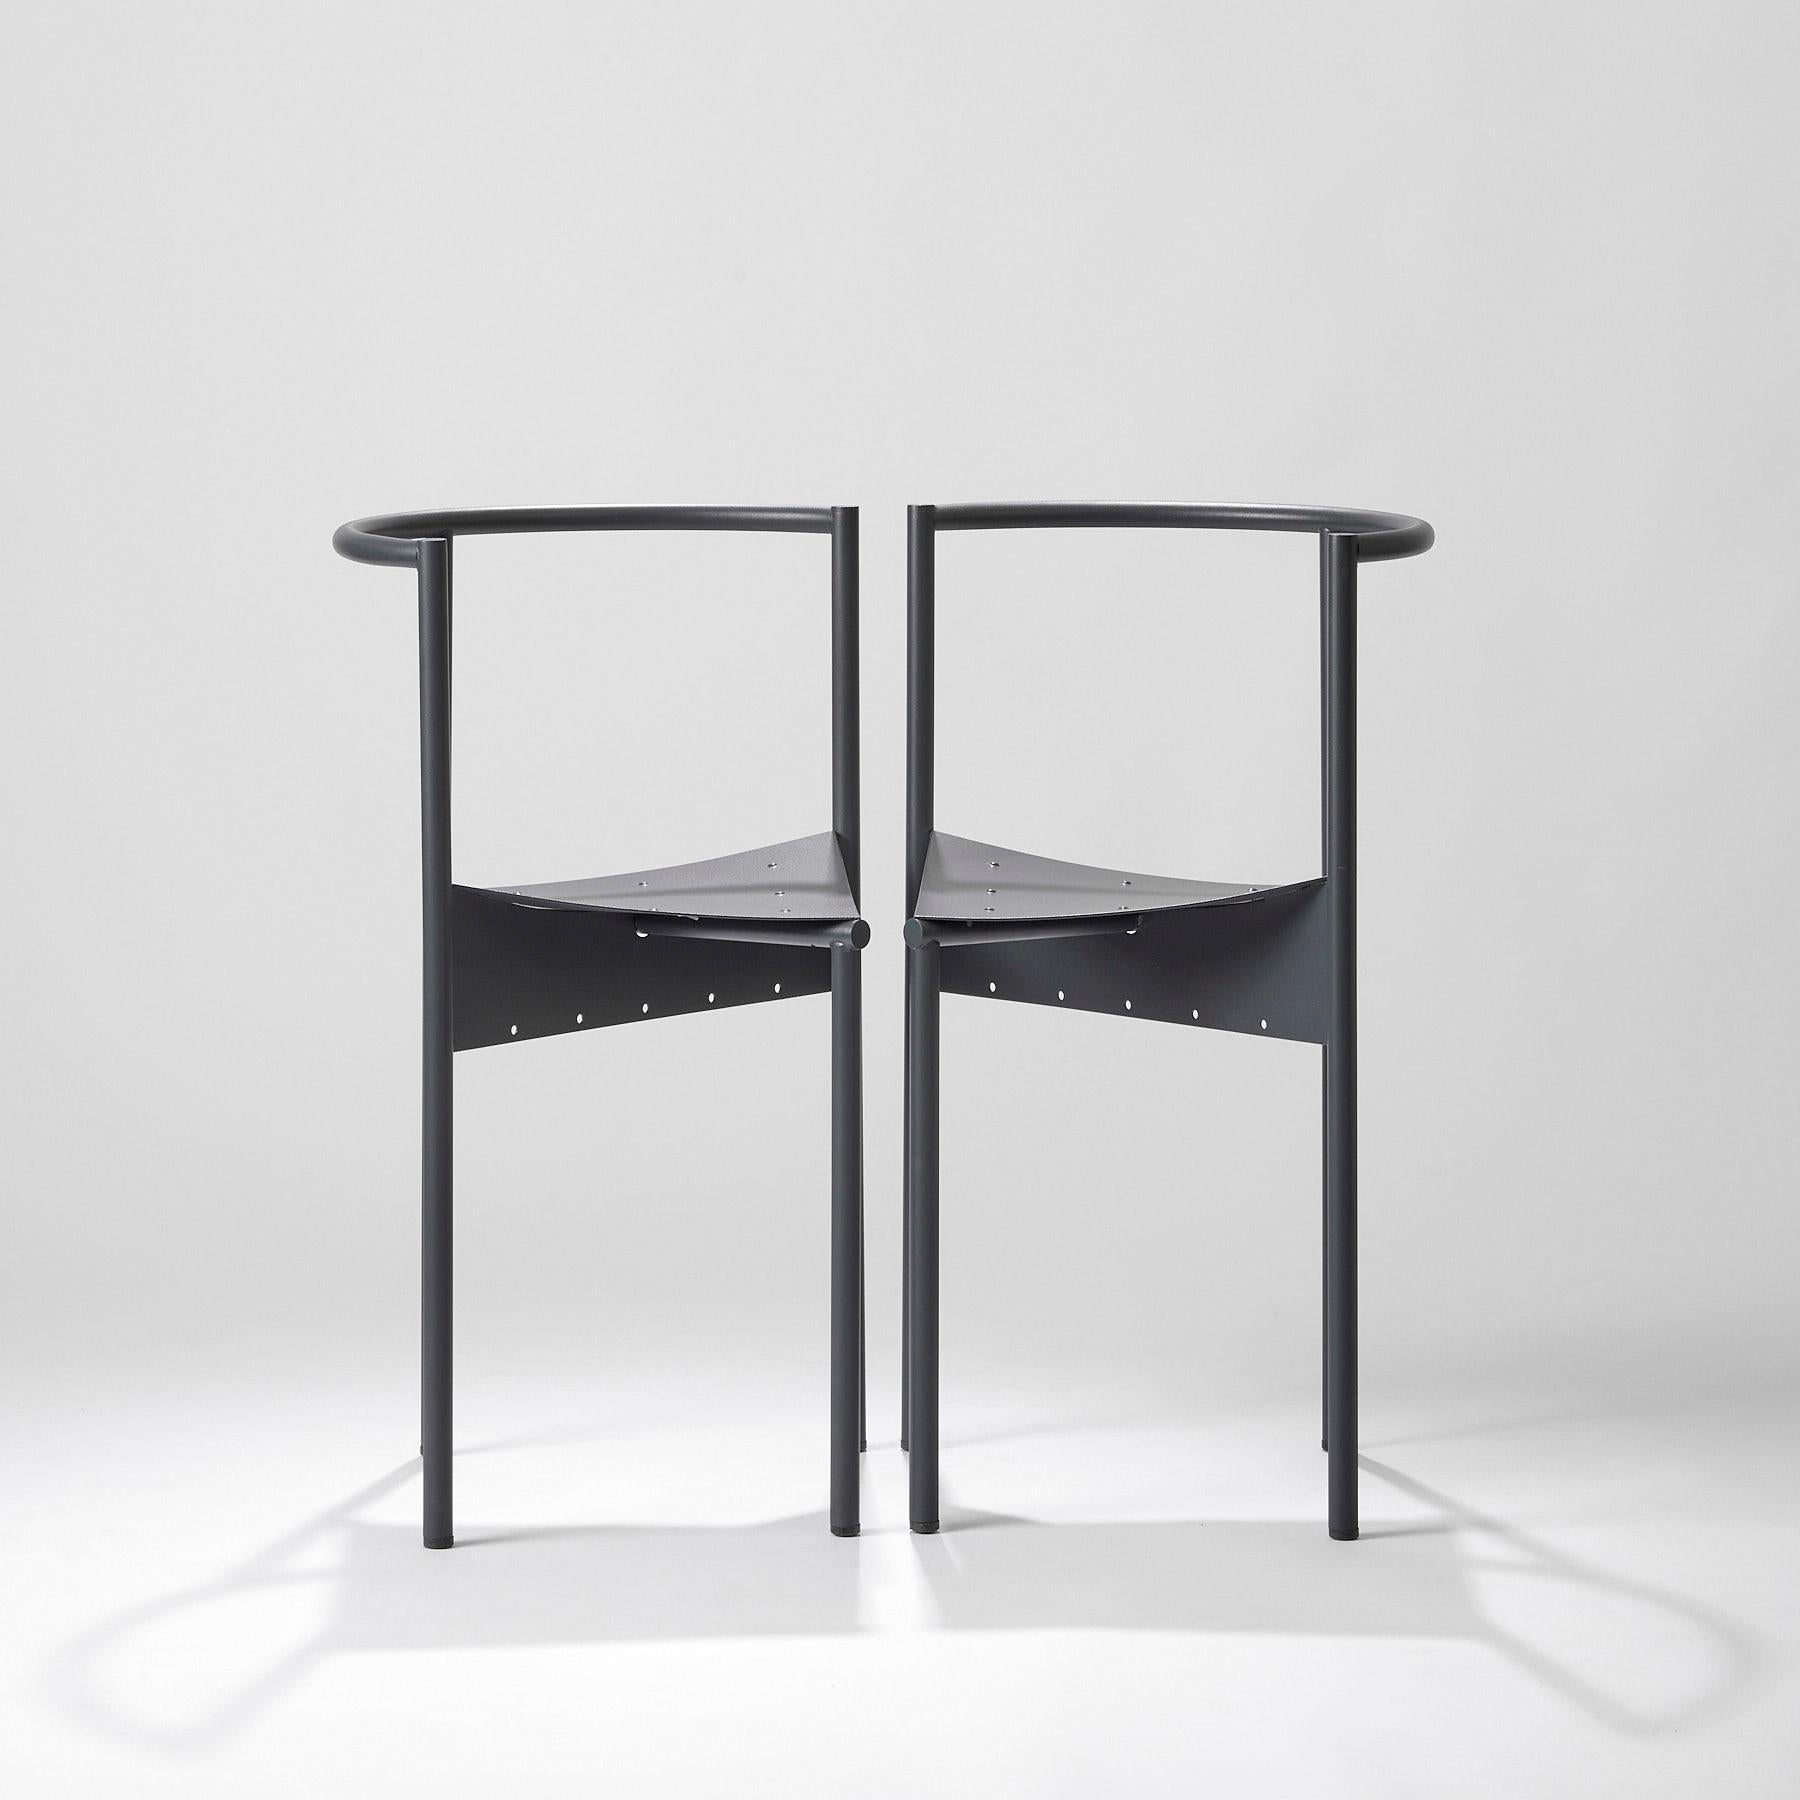 PHILIPPE STARCK (né en 1949)
Chaises de Wendy Wright, vers 1986
Disform Barcelona editor 
Paire de chaises en métal laqué anthracite
H. 75 cm - L. 48 cm - P. 47 cm.